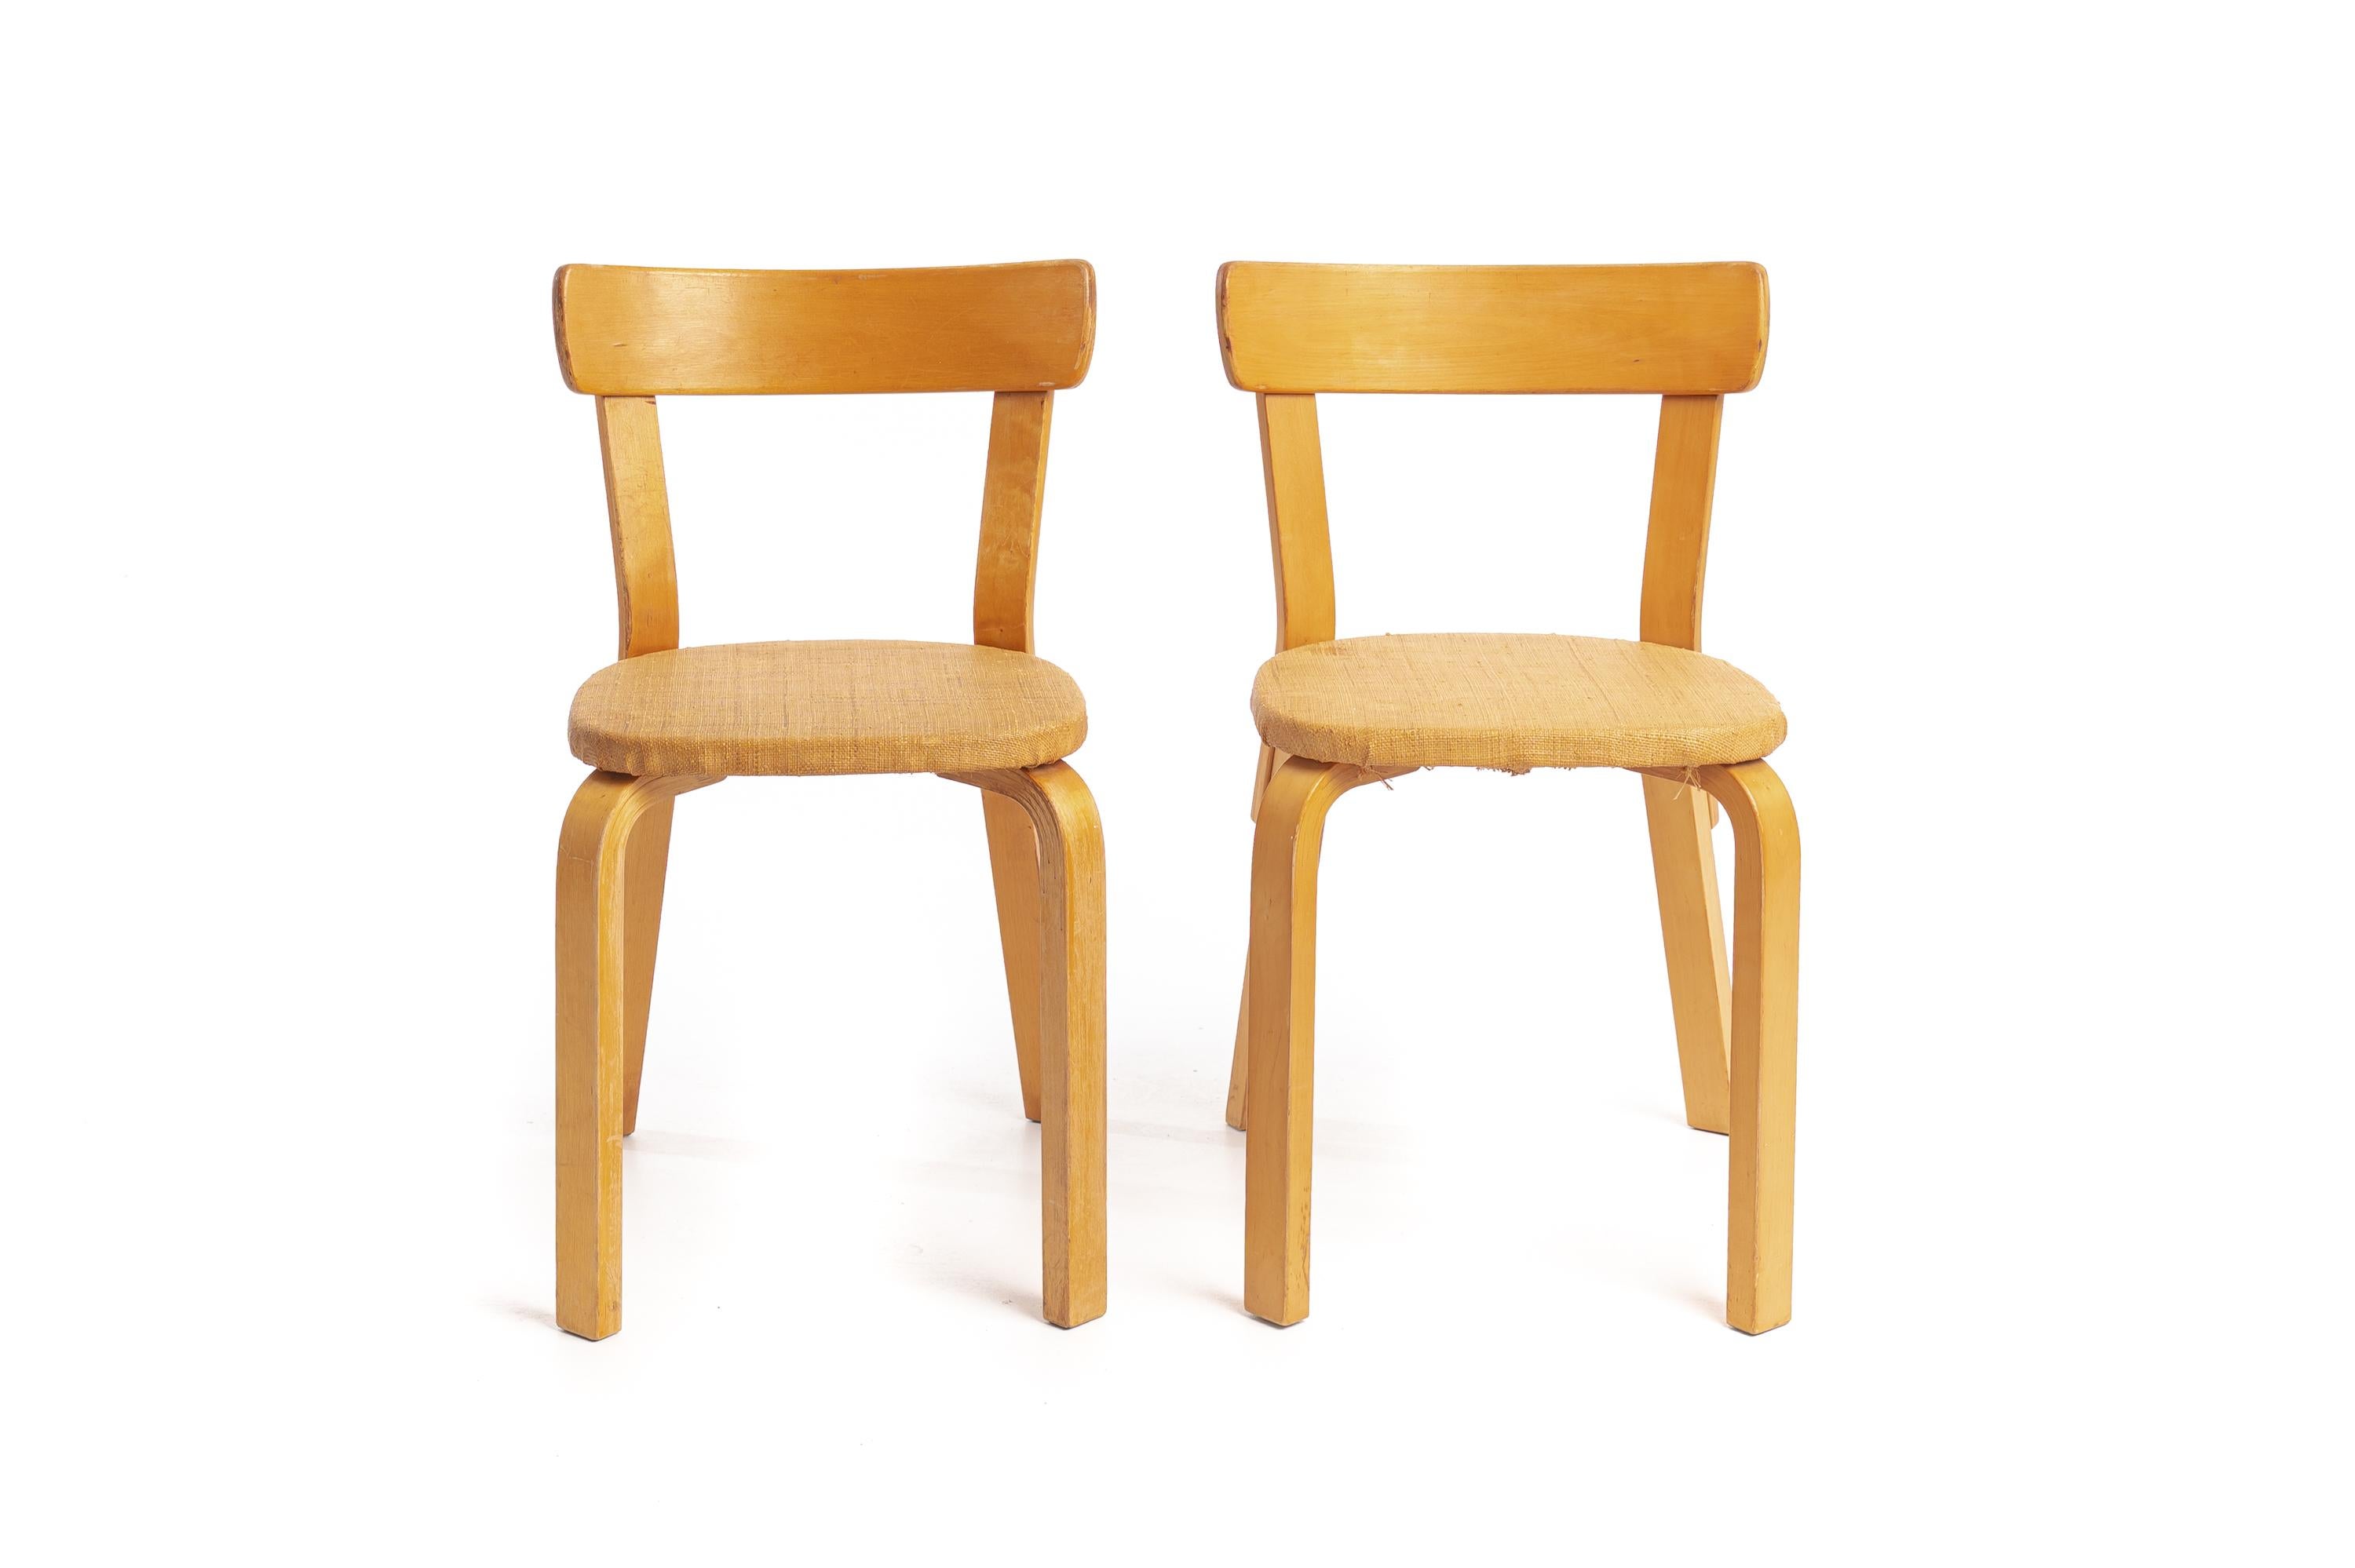 Ces chaises Alvar Aalto modèle 69 sont en parfait état d'origine. Elles ont été fabriquées au début des années 1950 et sont très difficiles à trouver dans cet état.
